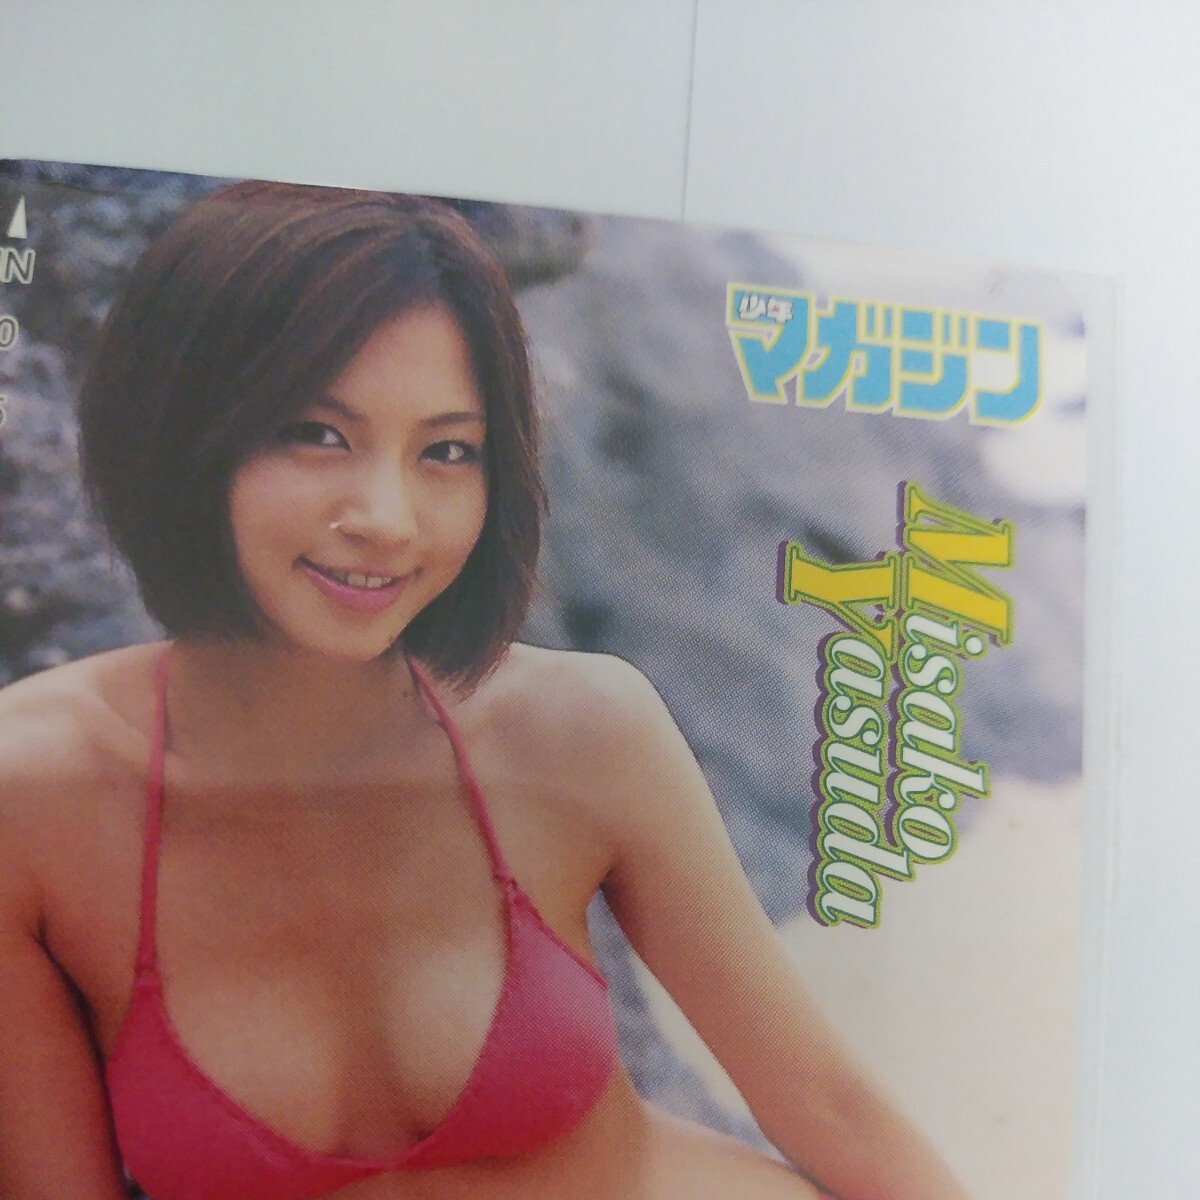  Yasuda Misako QUO card 